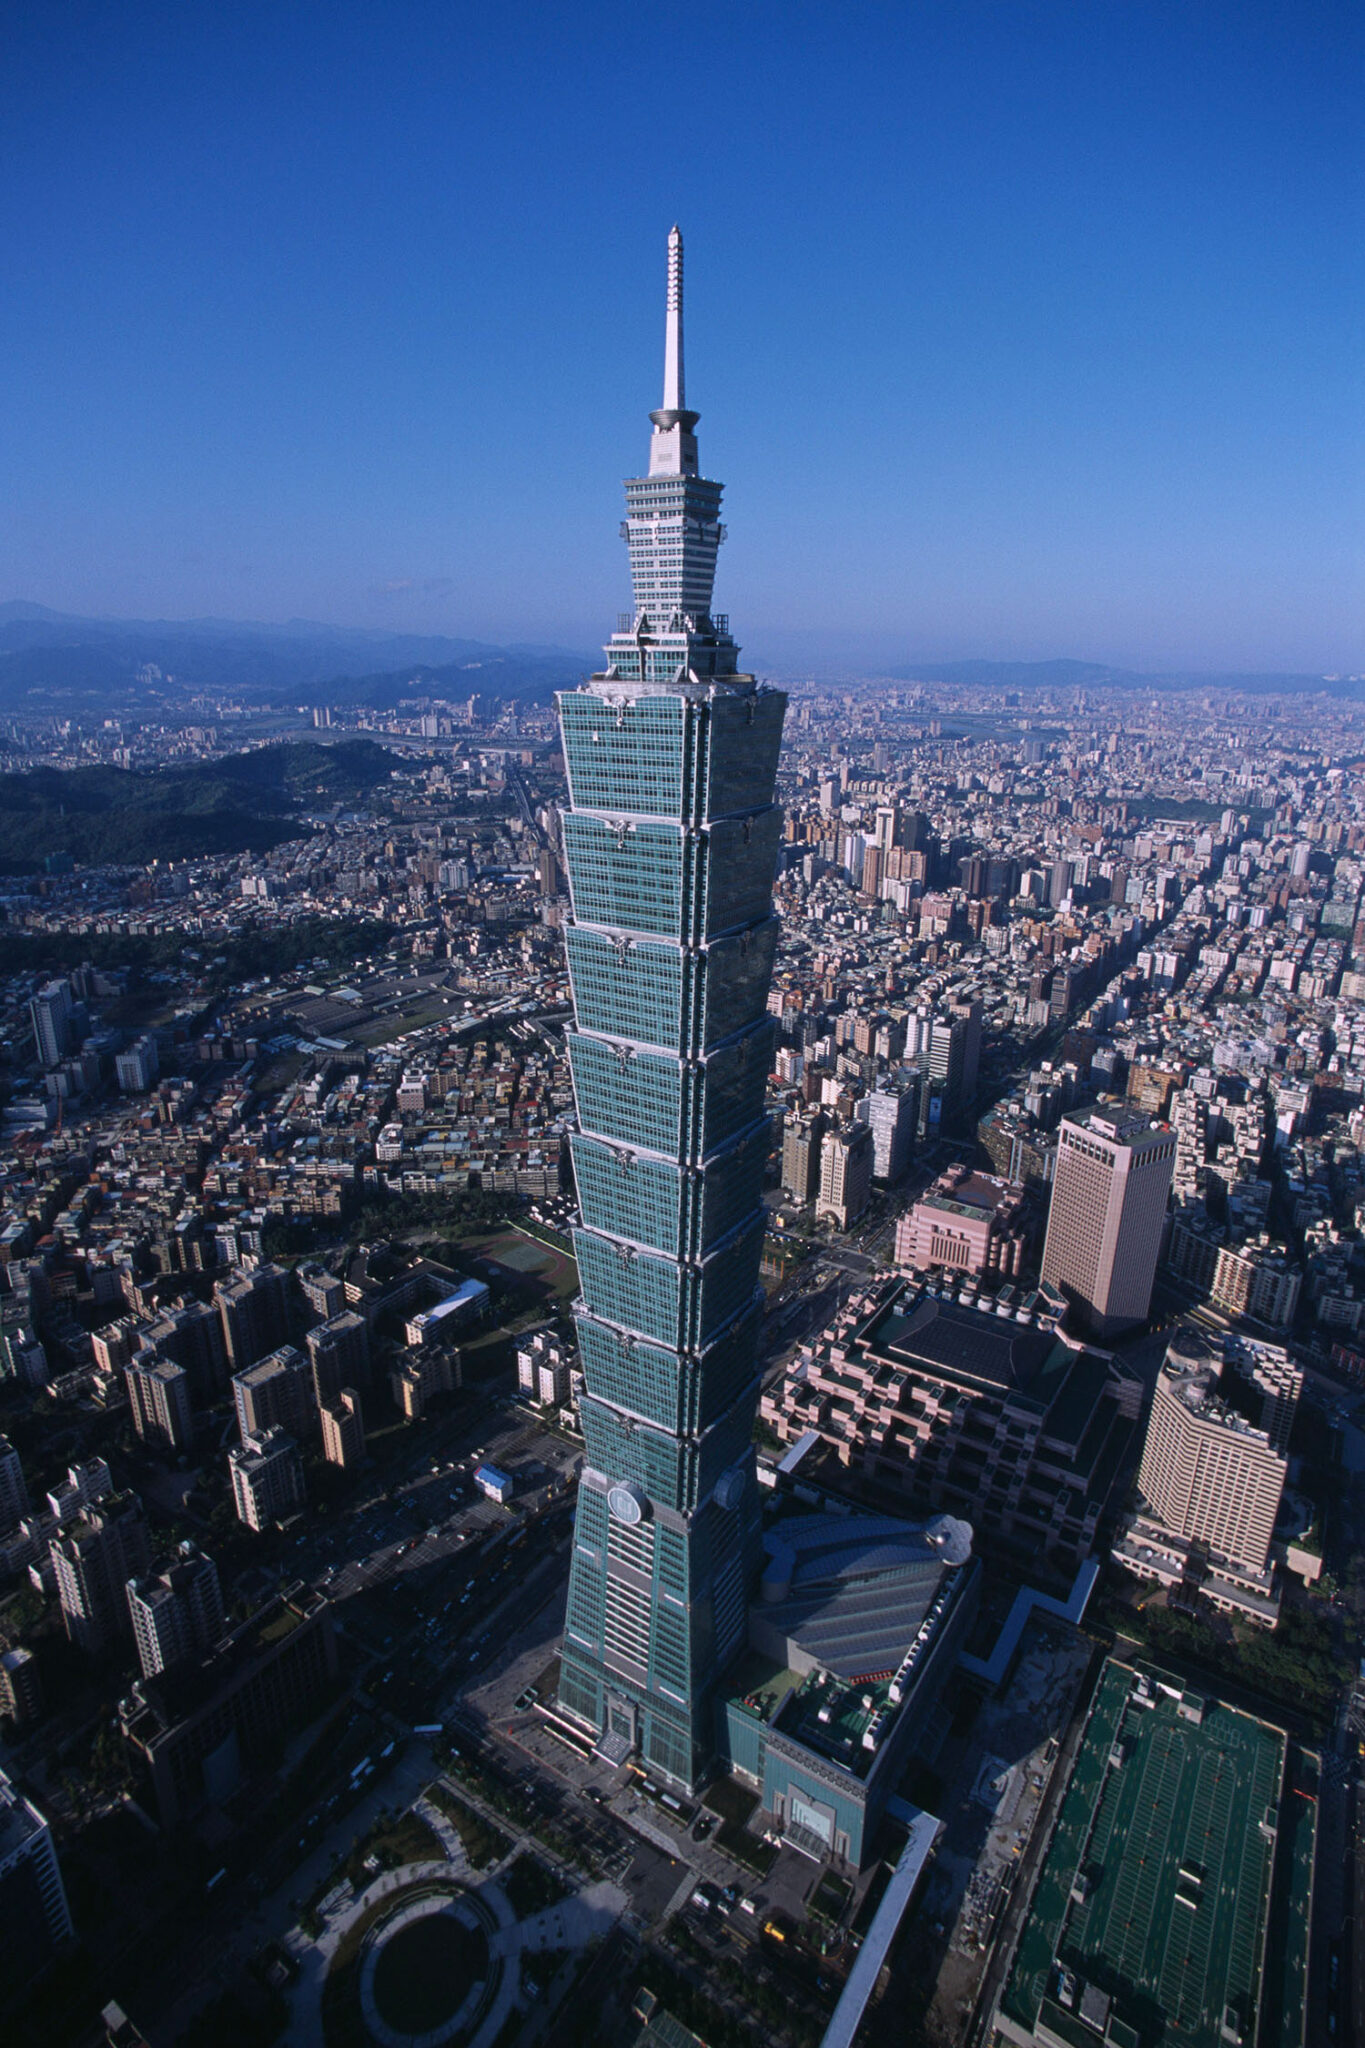 Taipei 101 - World's Tallest Towers
